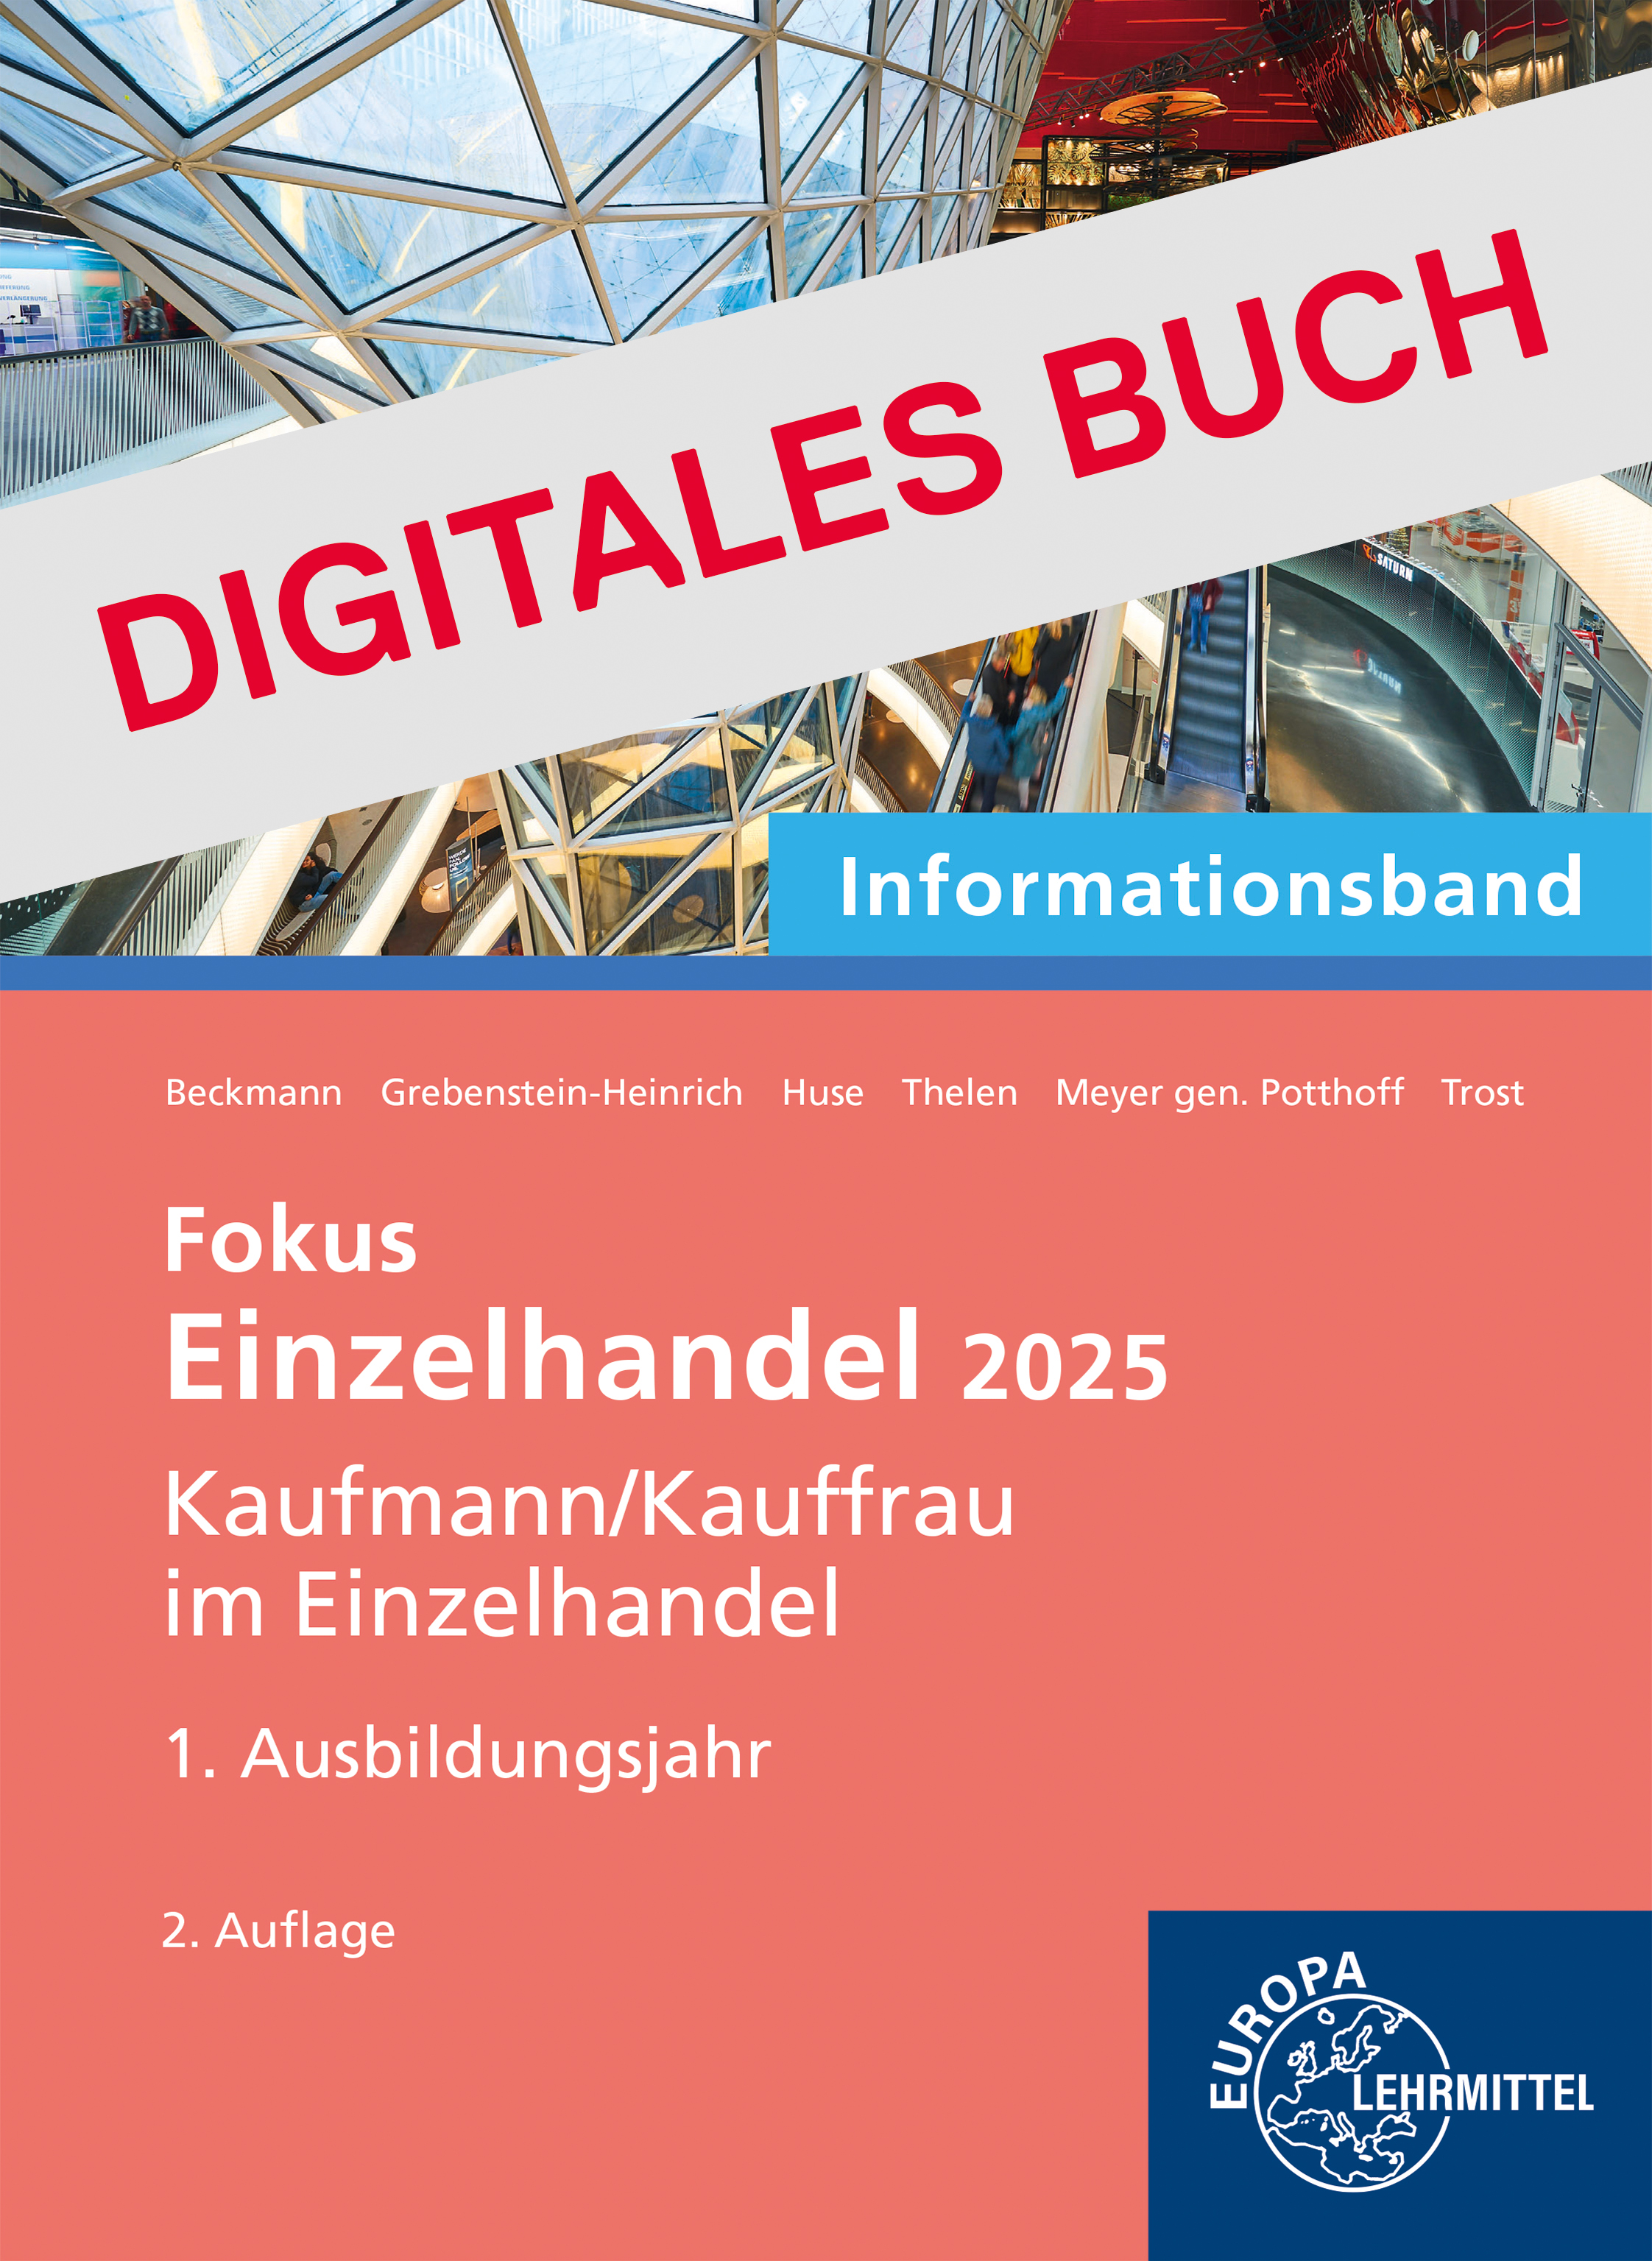 Einzelhandel 2025, Informationsband 1. Ausbildungsjahr - Digitales Buch